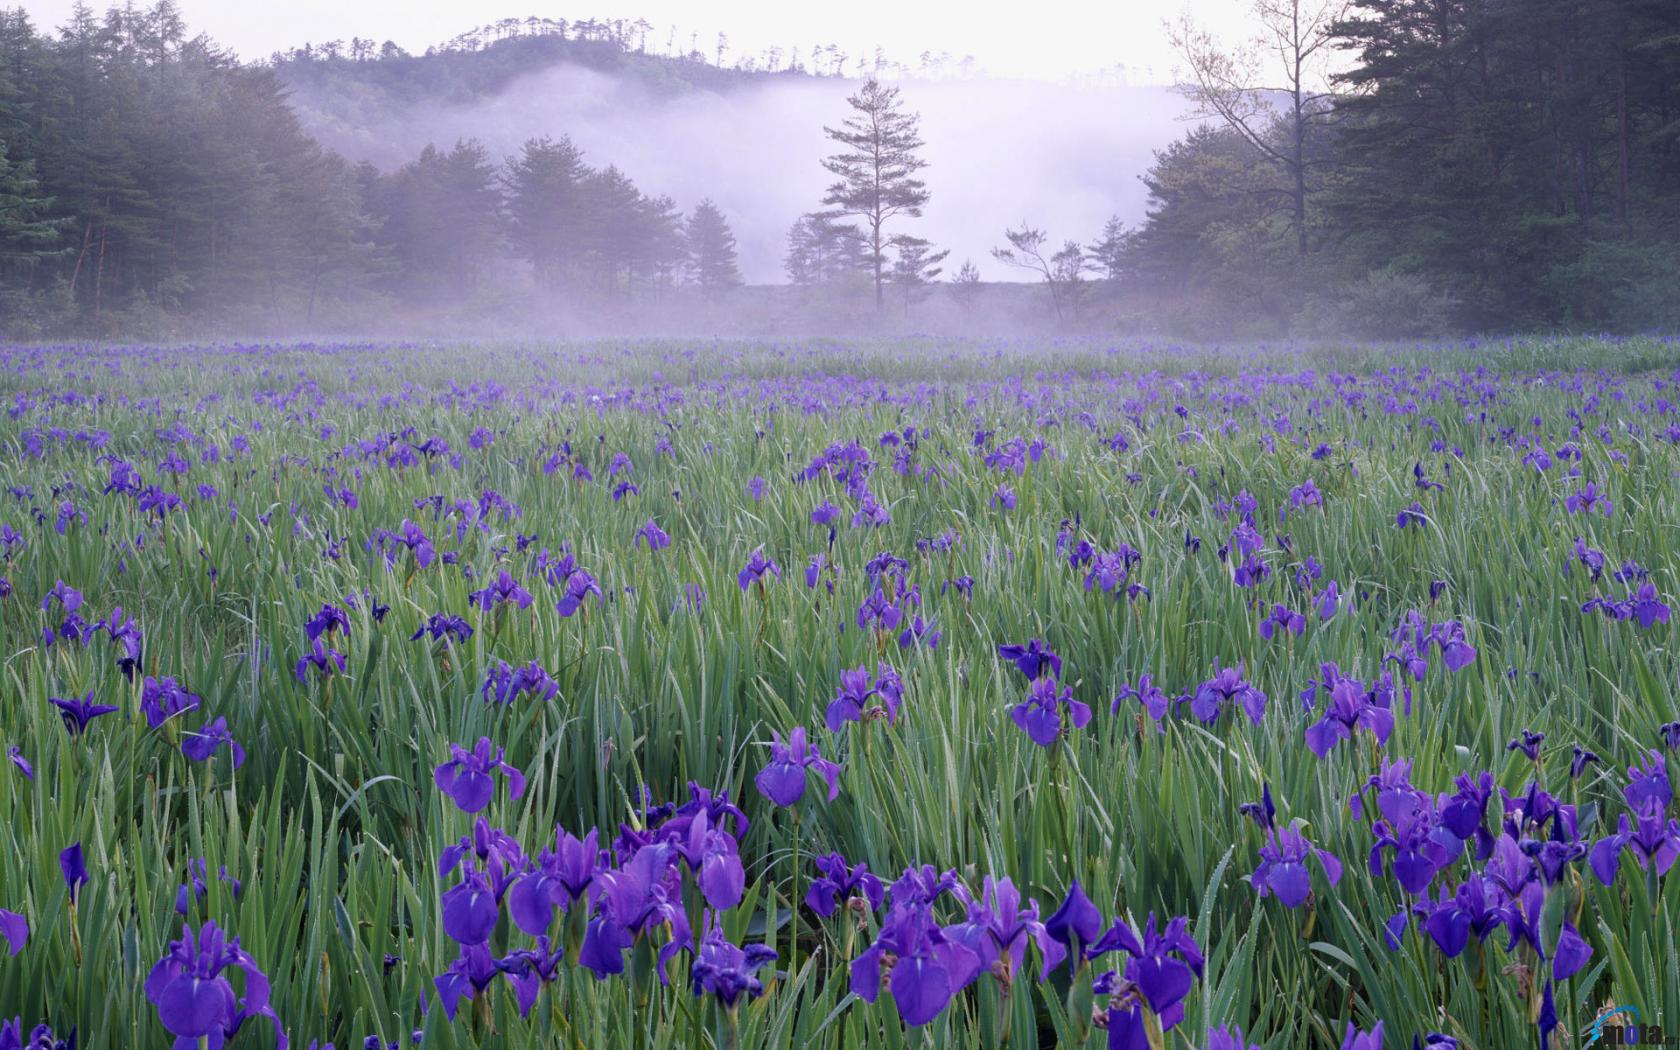 Desktop wallpapers Iris meadow in the mist near Hiroshima.